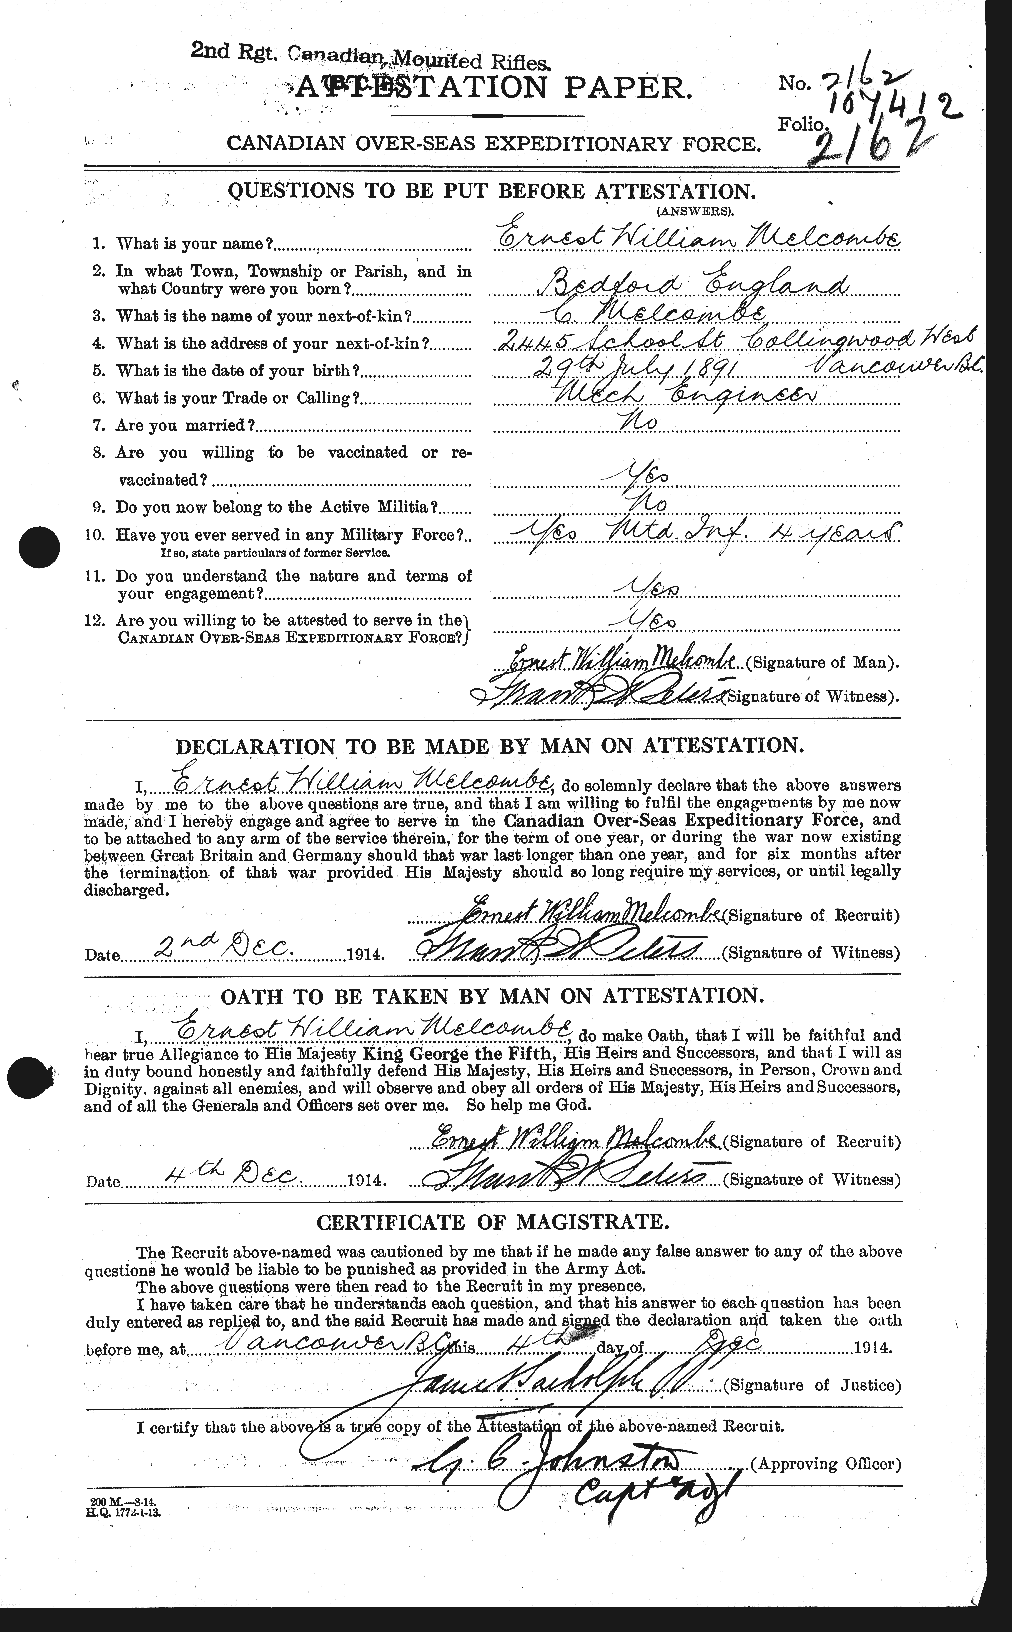 Dossiers du Personnel de la Première Guerre mondiale - CEC 493599a